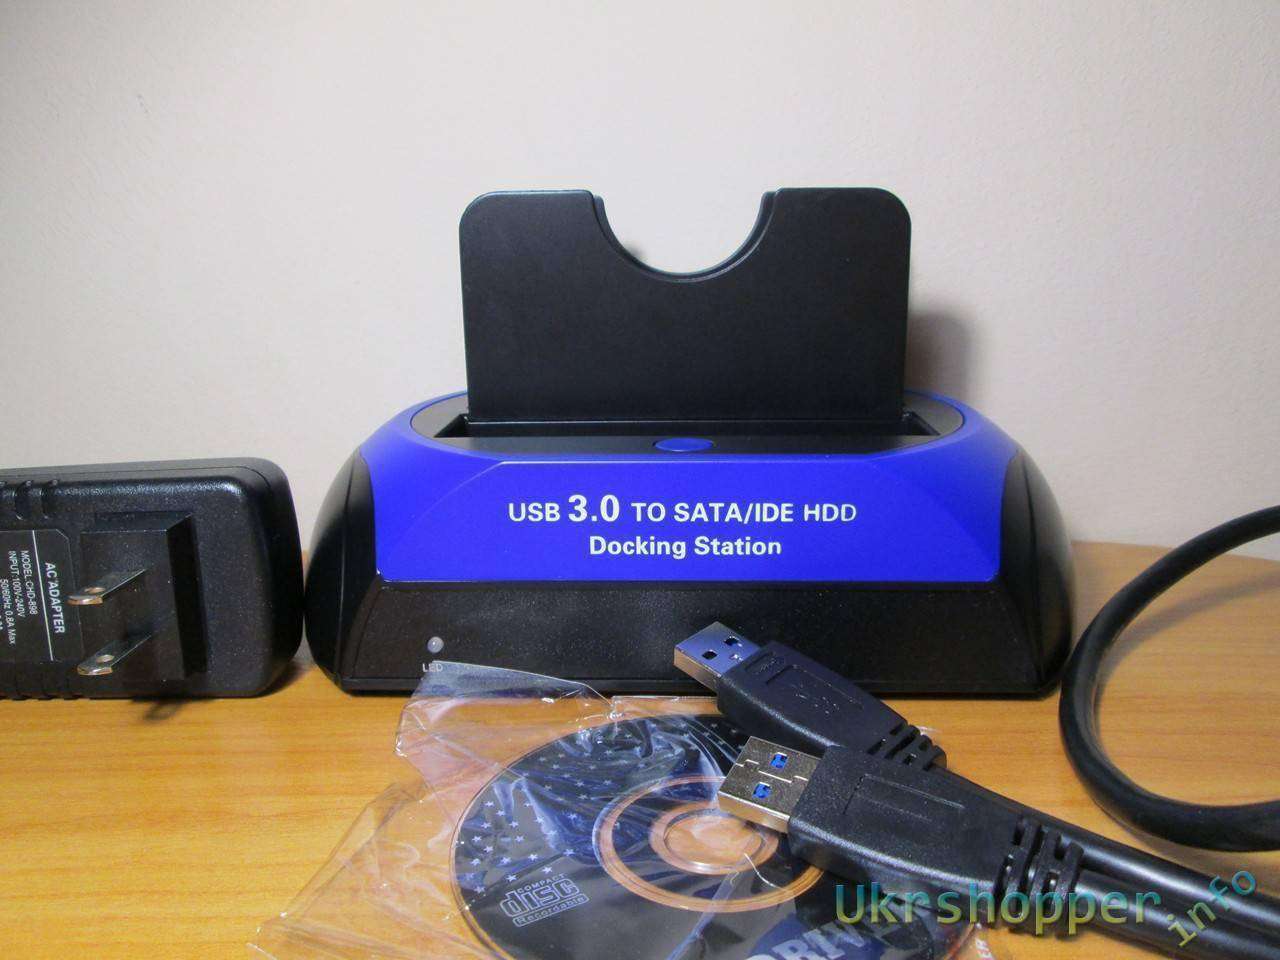 DealExtreme: Универсальная USB 3.0 док-станция для SATA/IDE 2.5”/3.5” жестких дисков